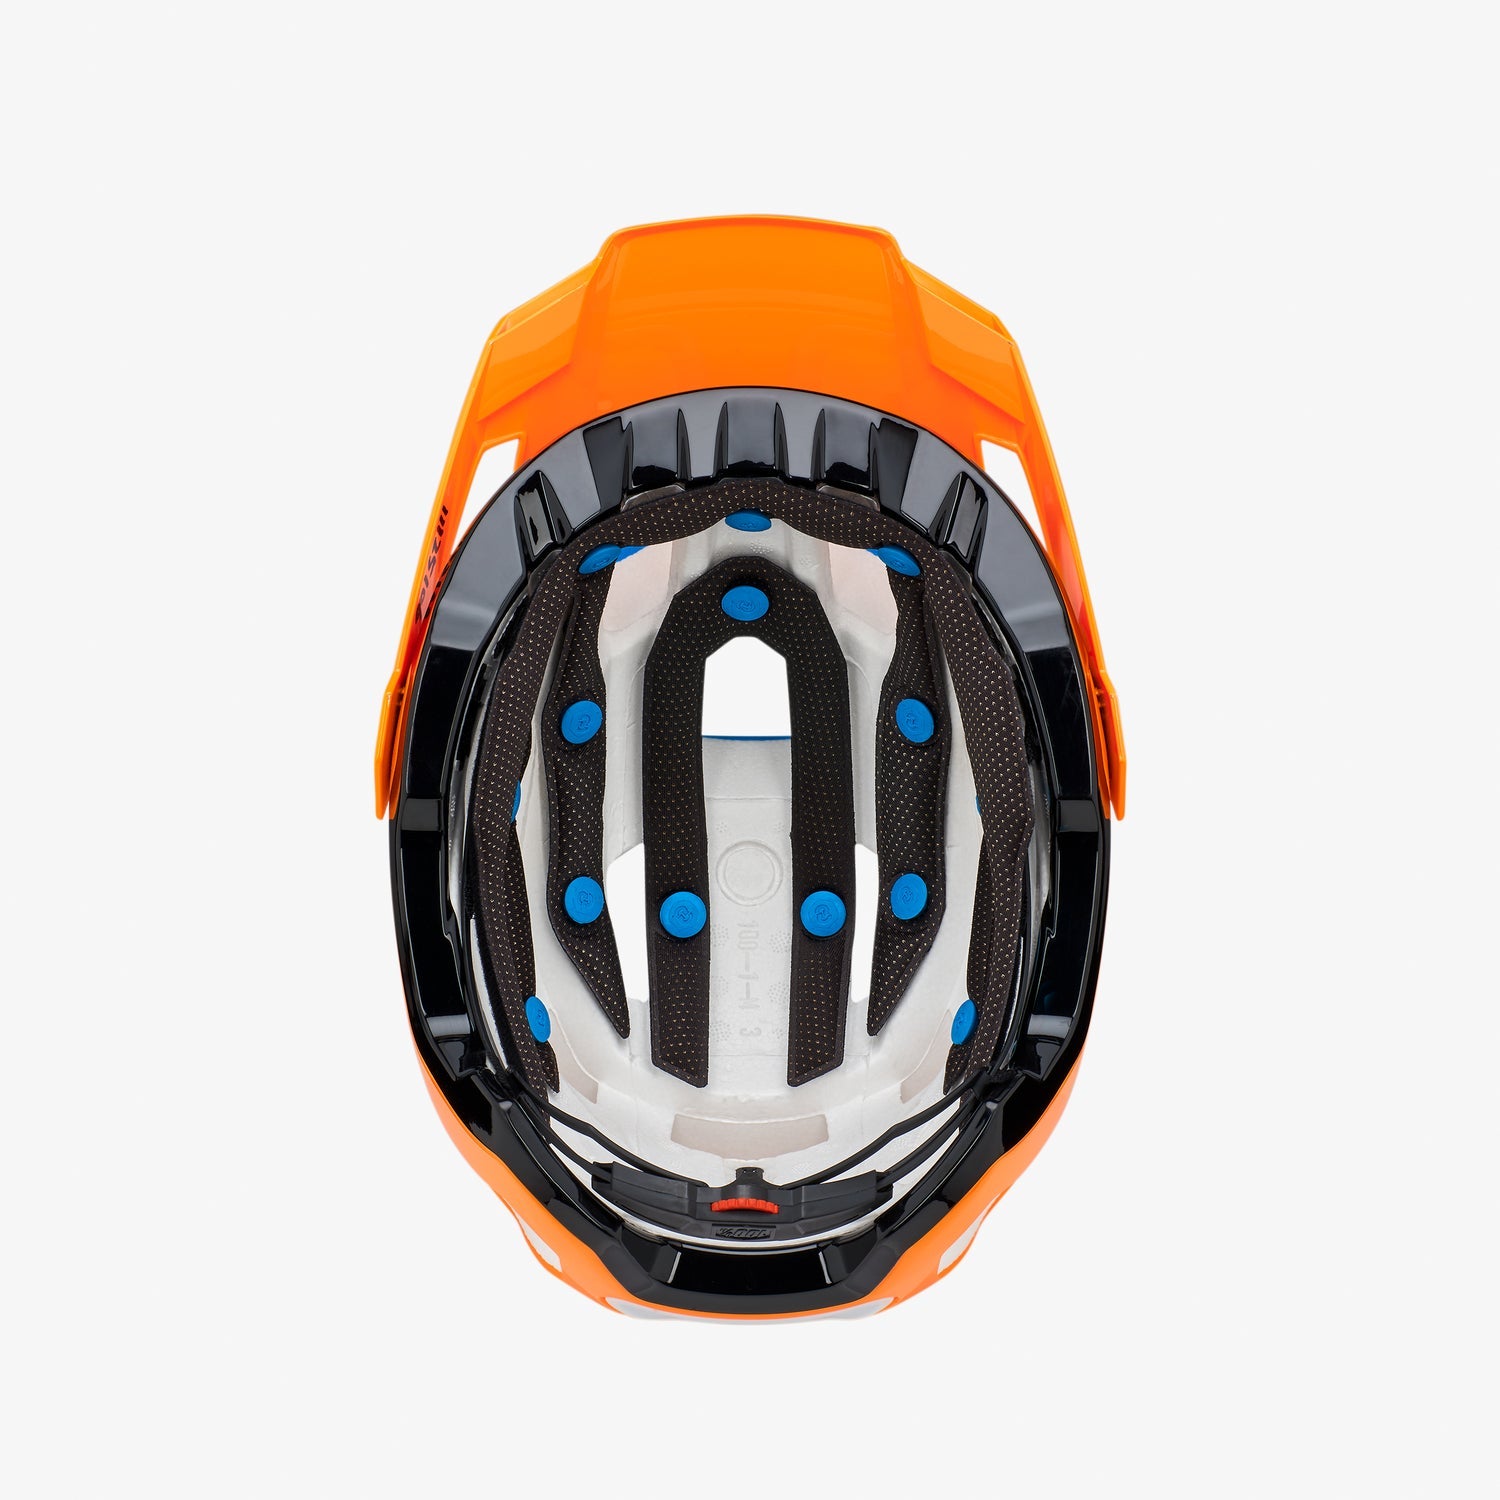 100% Altec Helmet Fidlock Neon Orange